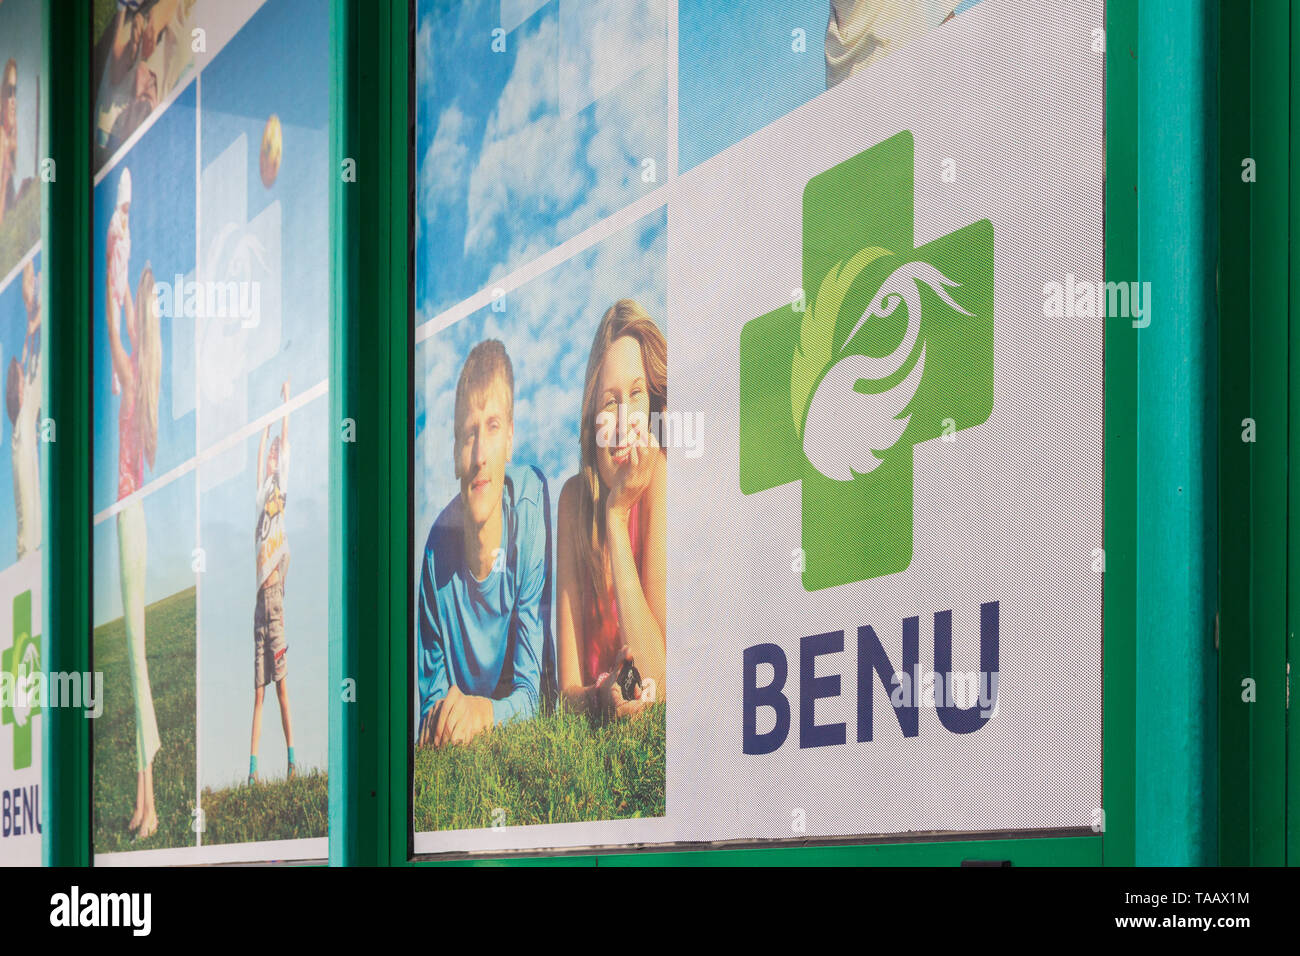 Les pharmacies Benu vitrine, Hongrie Banque D'Images